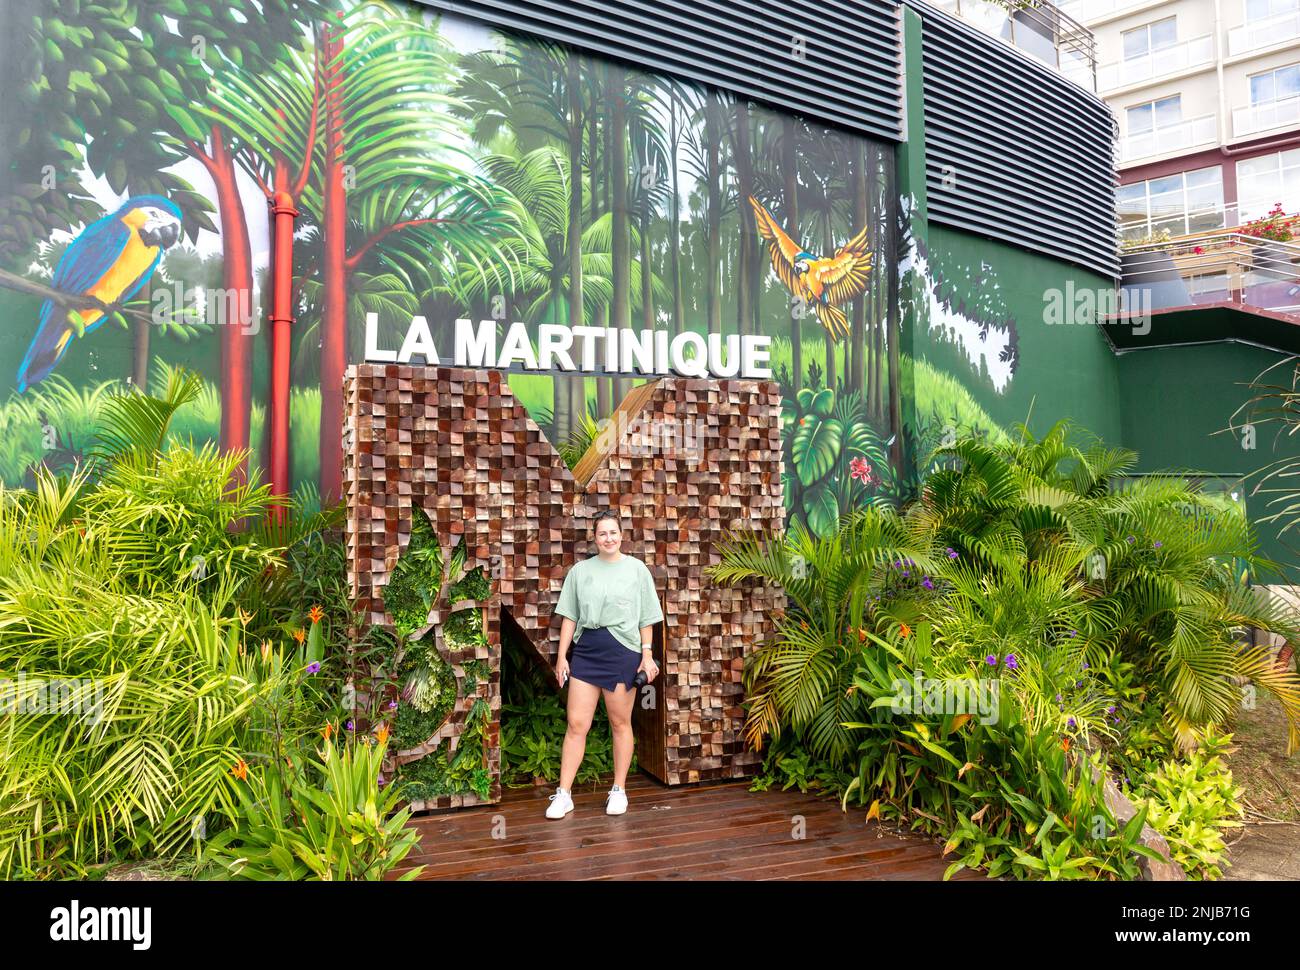 La Martinique signe de bienvenue au port, fort-de-France, Martinique, Petites Antilles, Caraïbes Banque D'Images